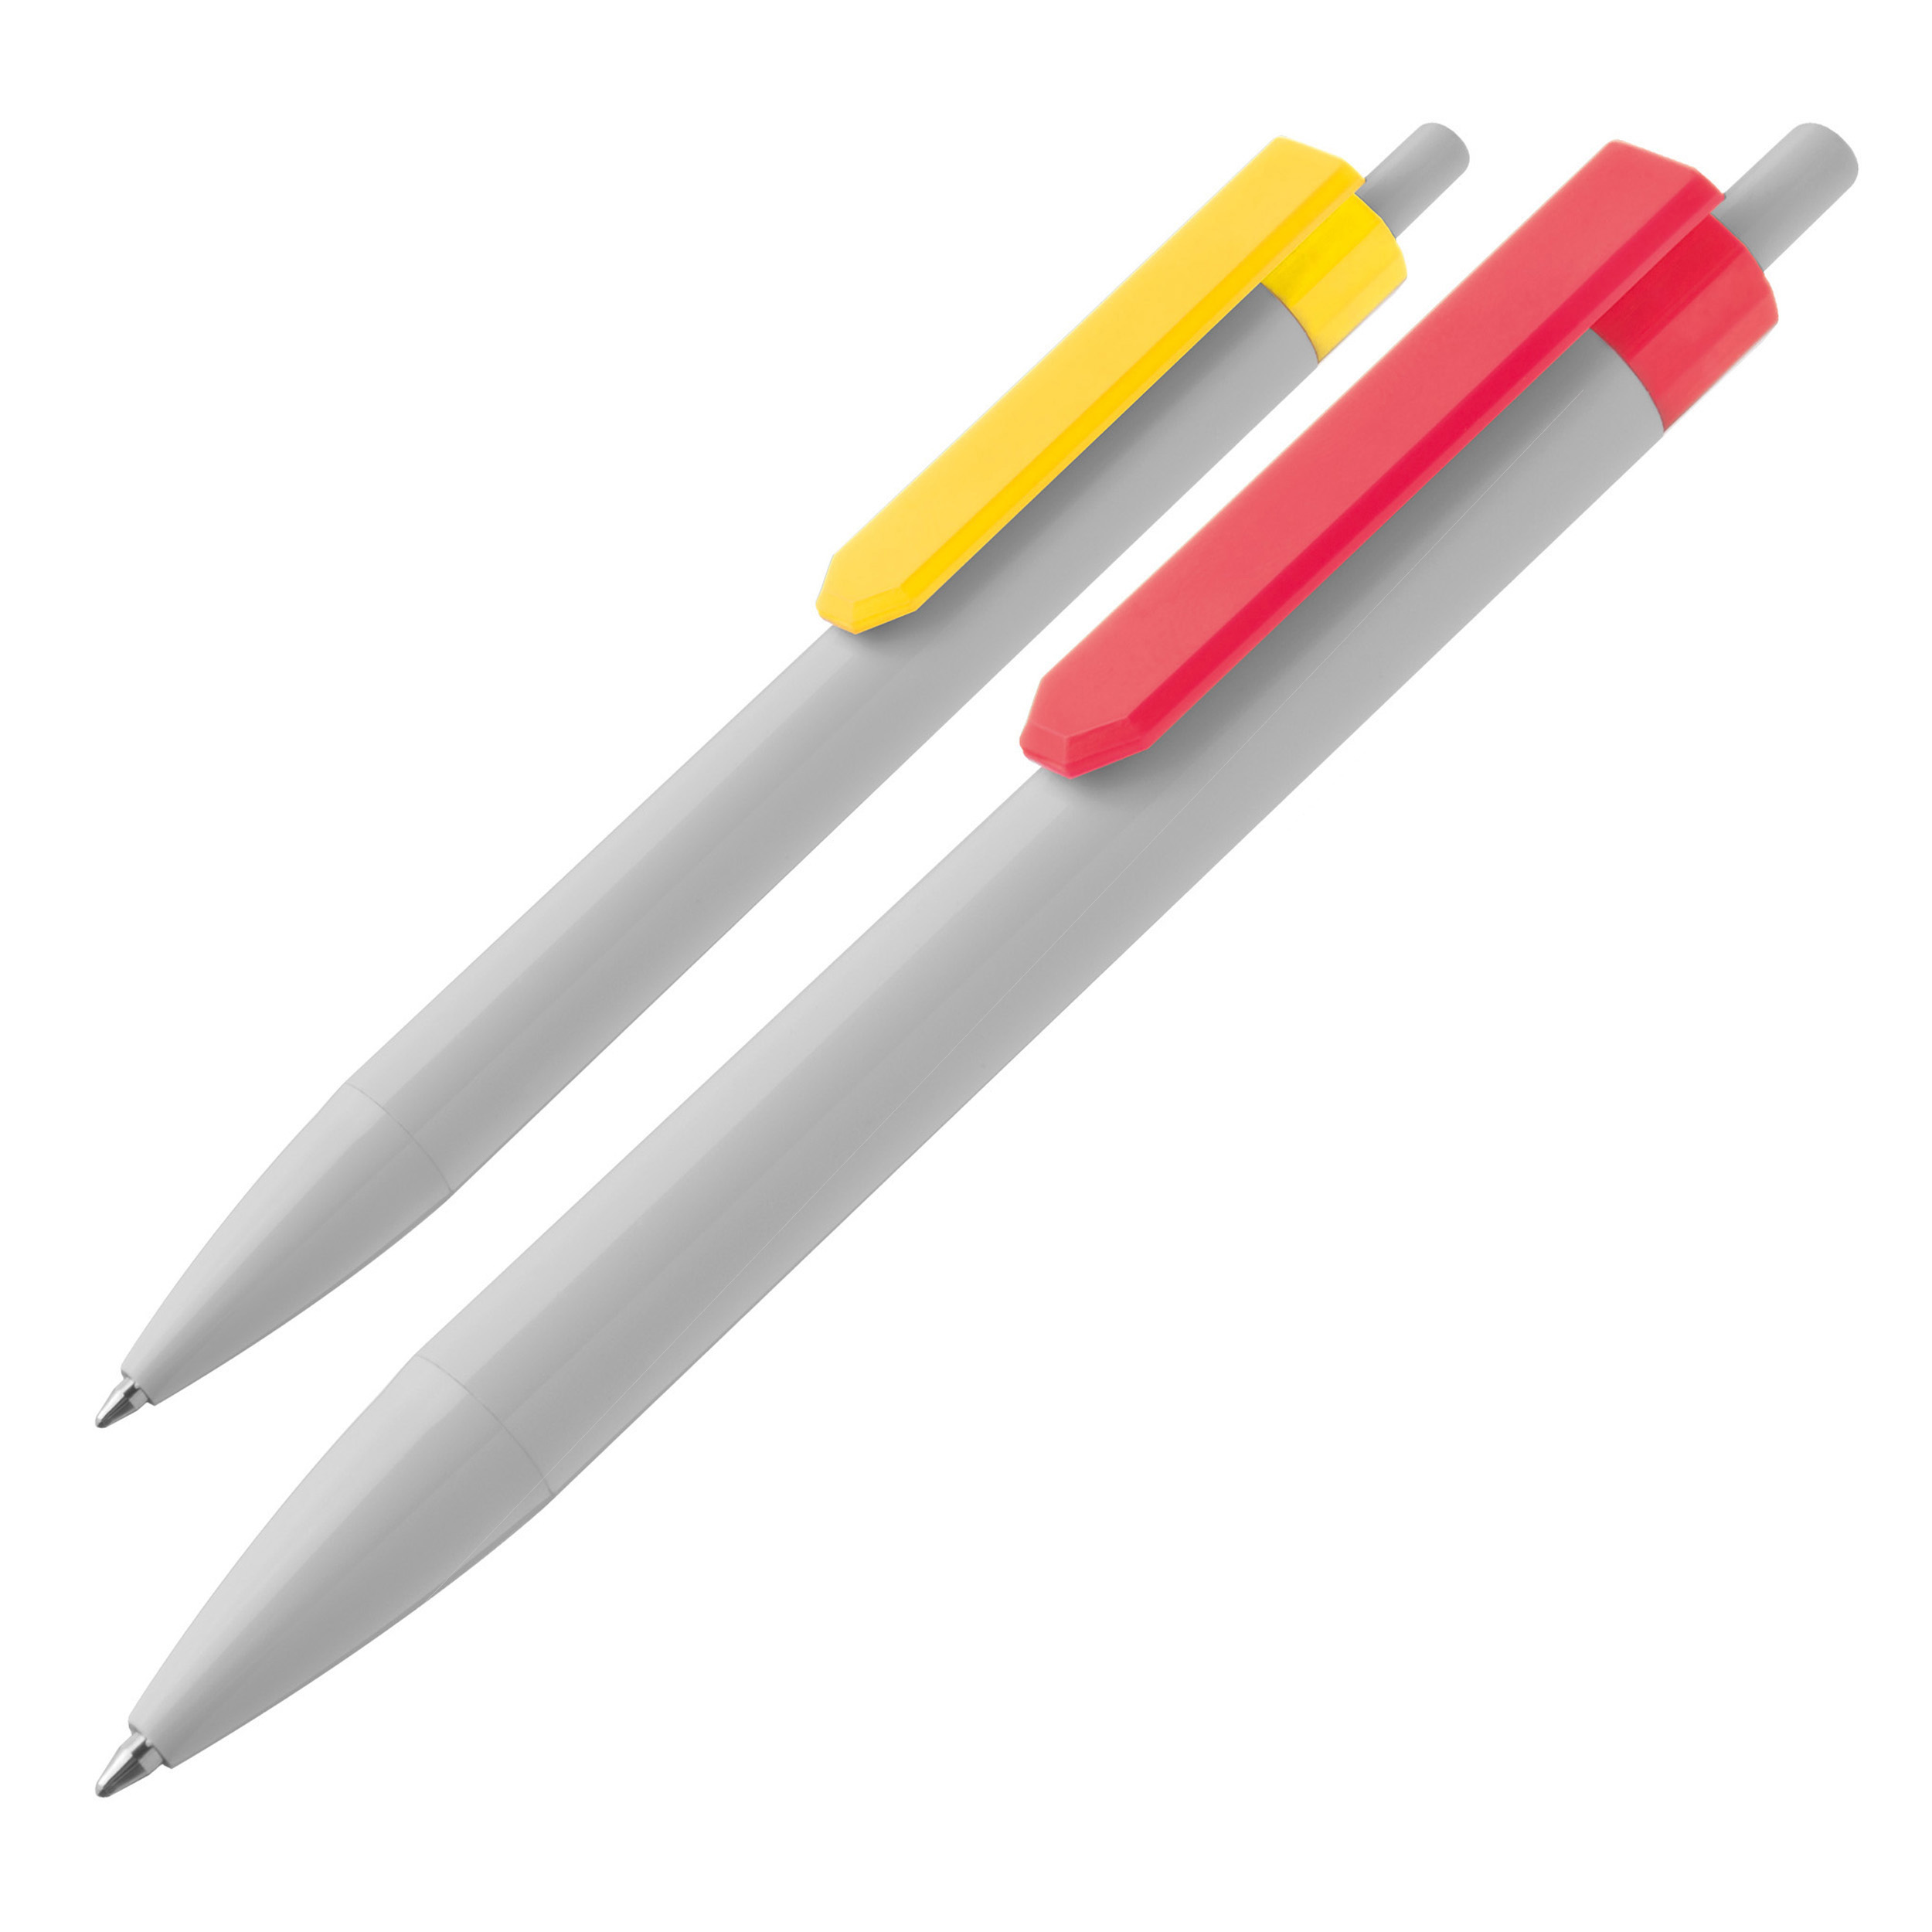 Kugelschreiber mit großem Clip